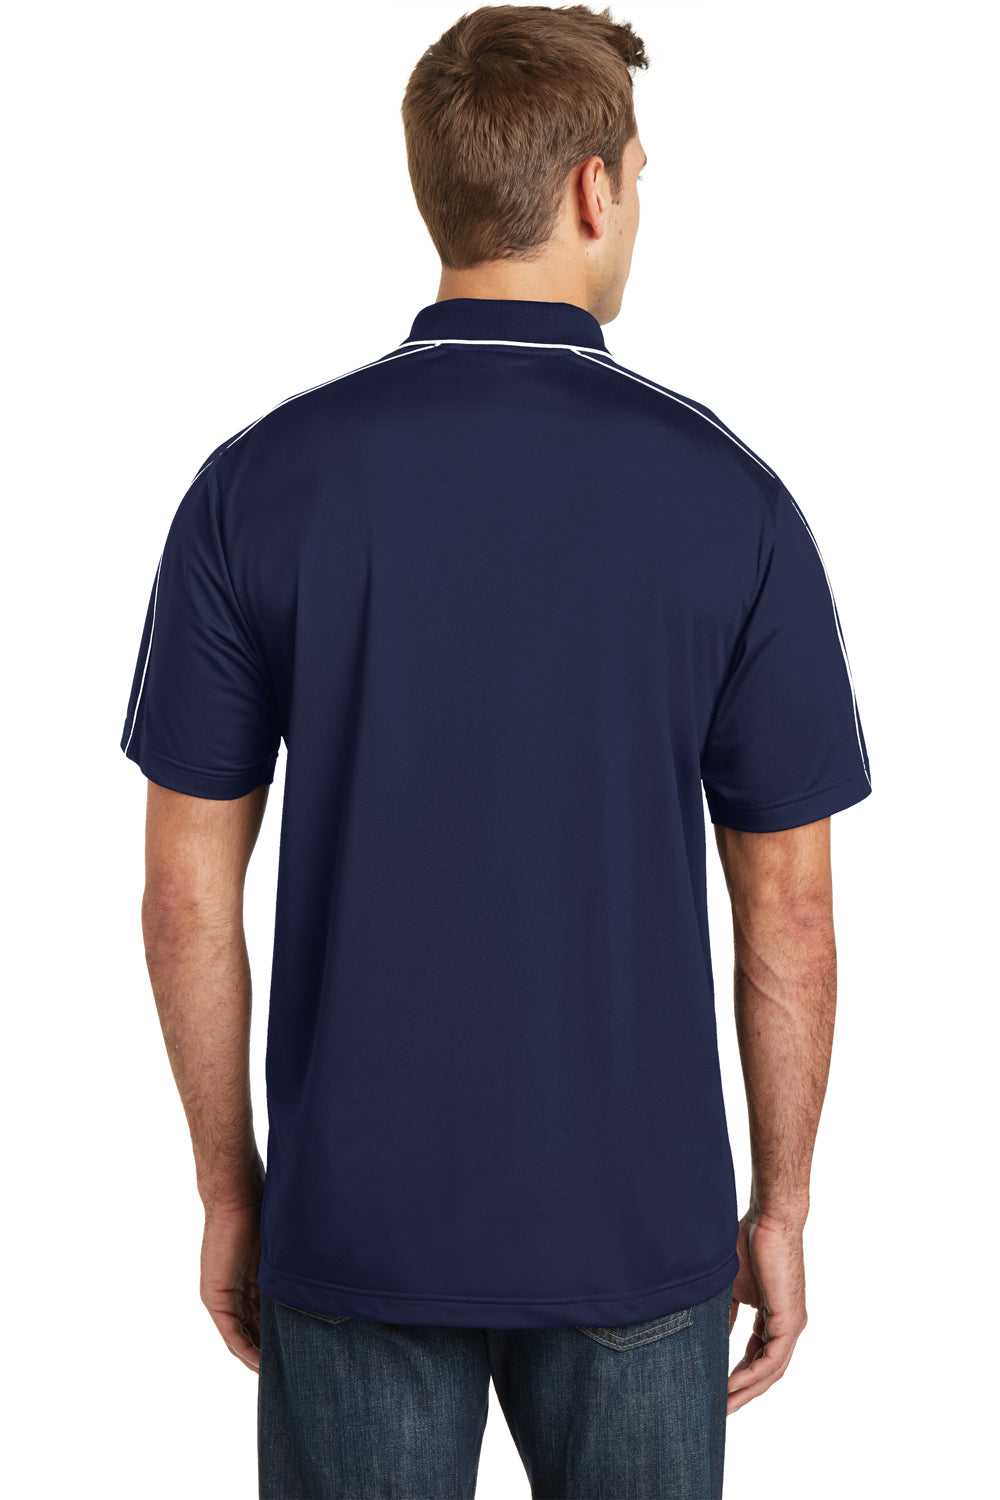 Sport-Tek ST653 Mens Sport-Wick Moisture Wicking Short Sleeve Polo Shirt Navy Blue/White Back